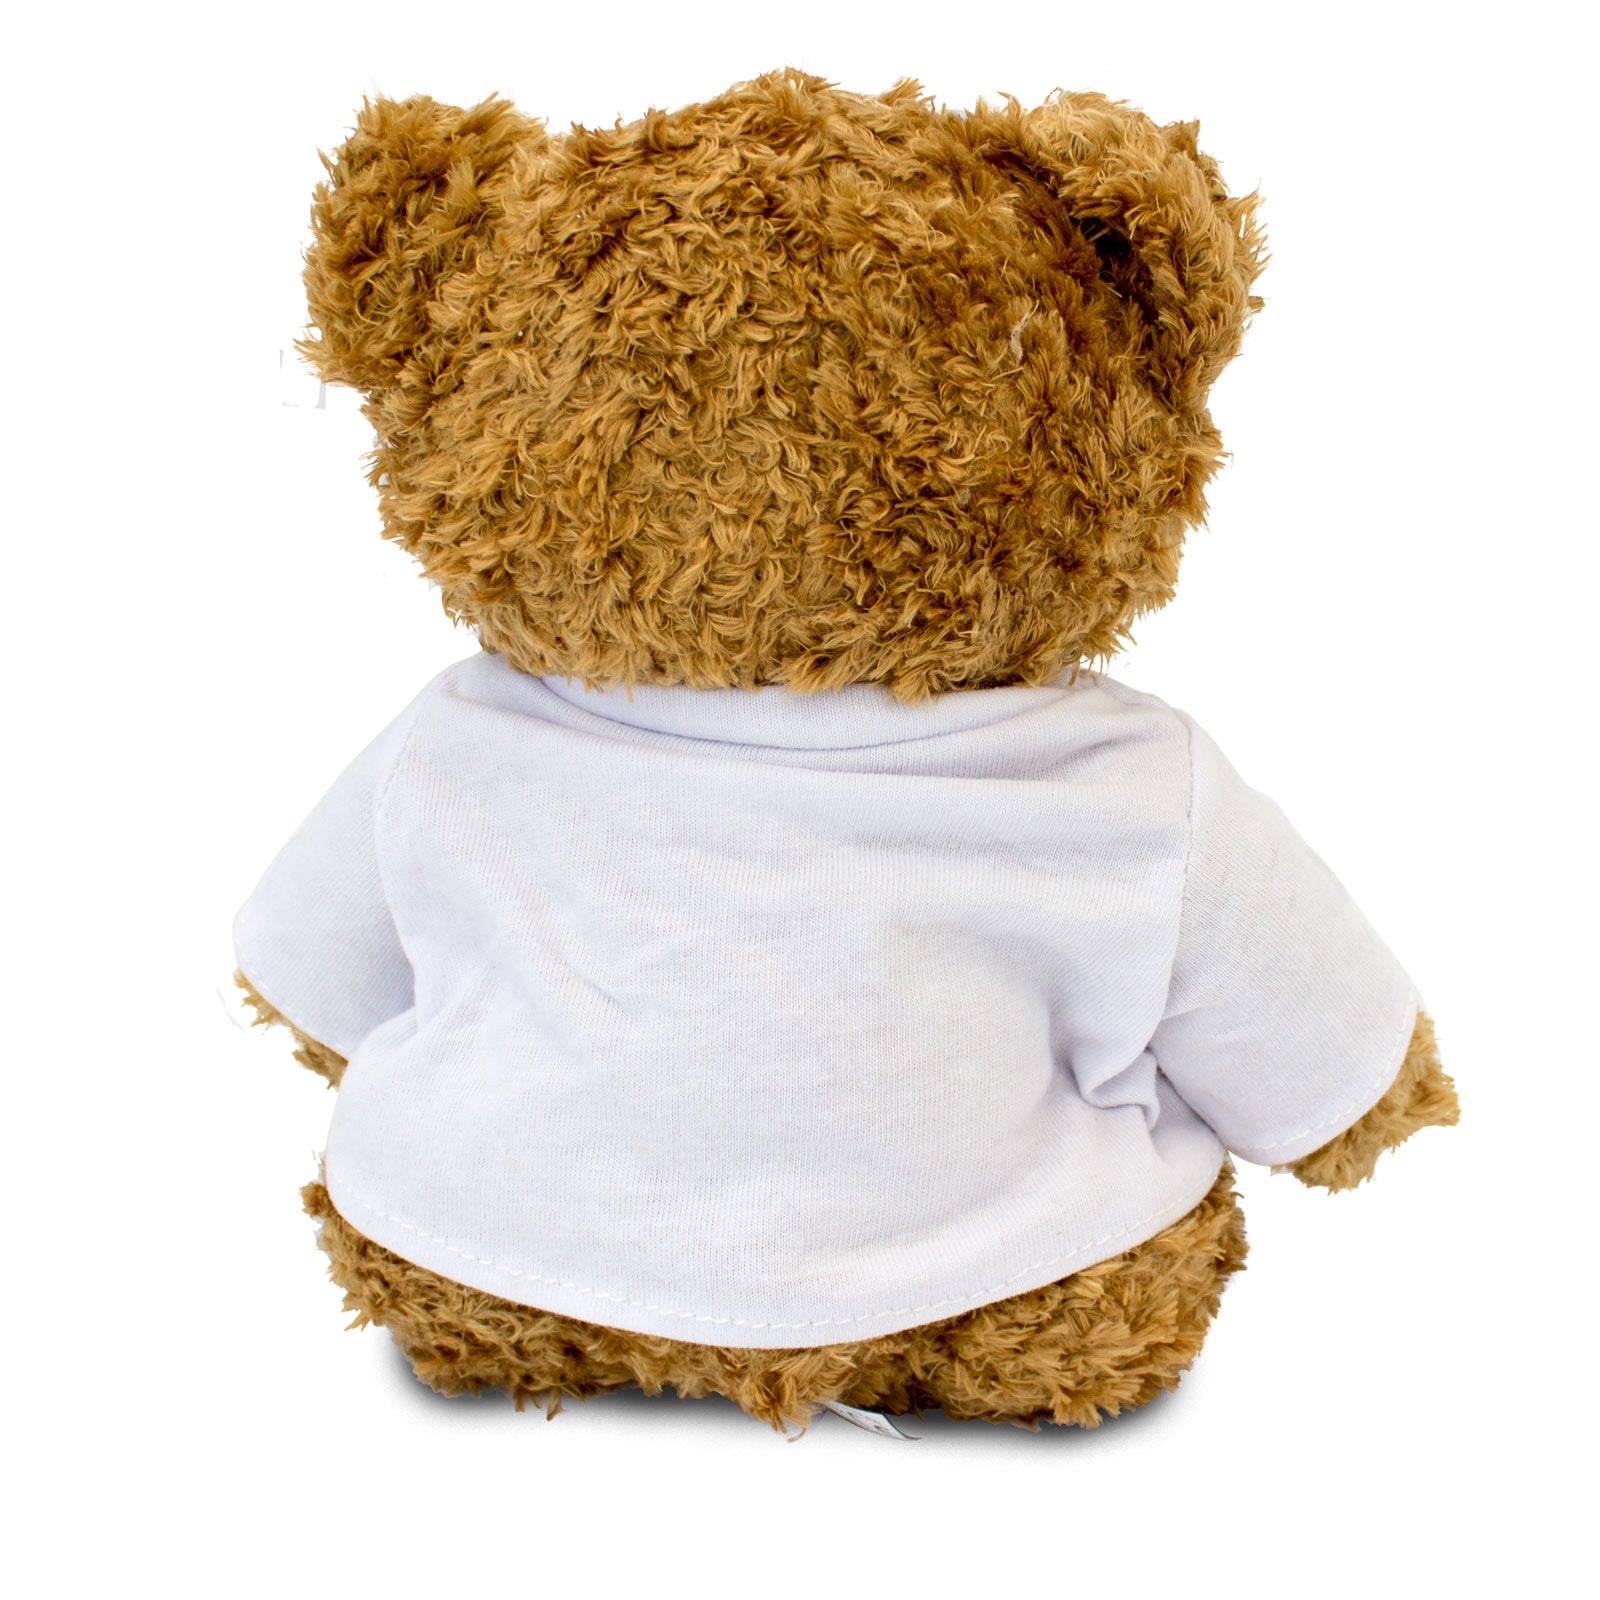 Get Well Soon Aimon - Teddy Bear